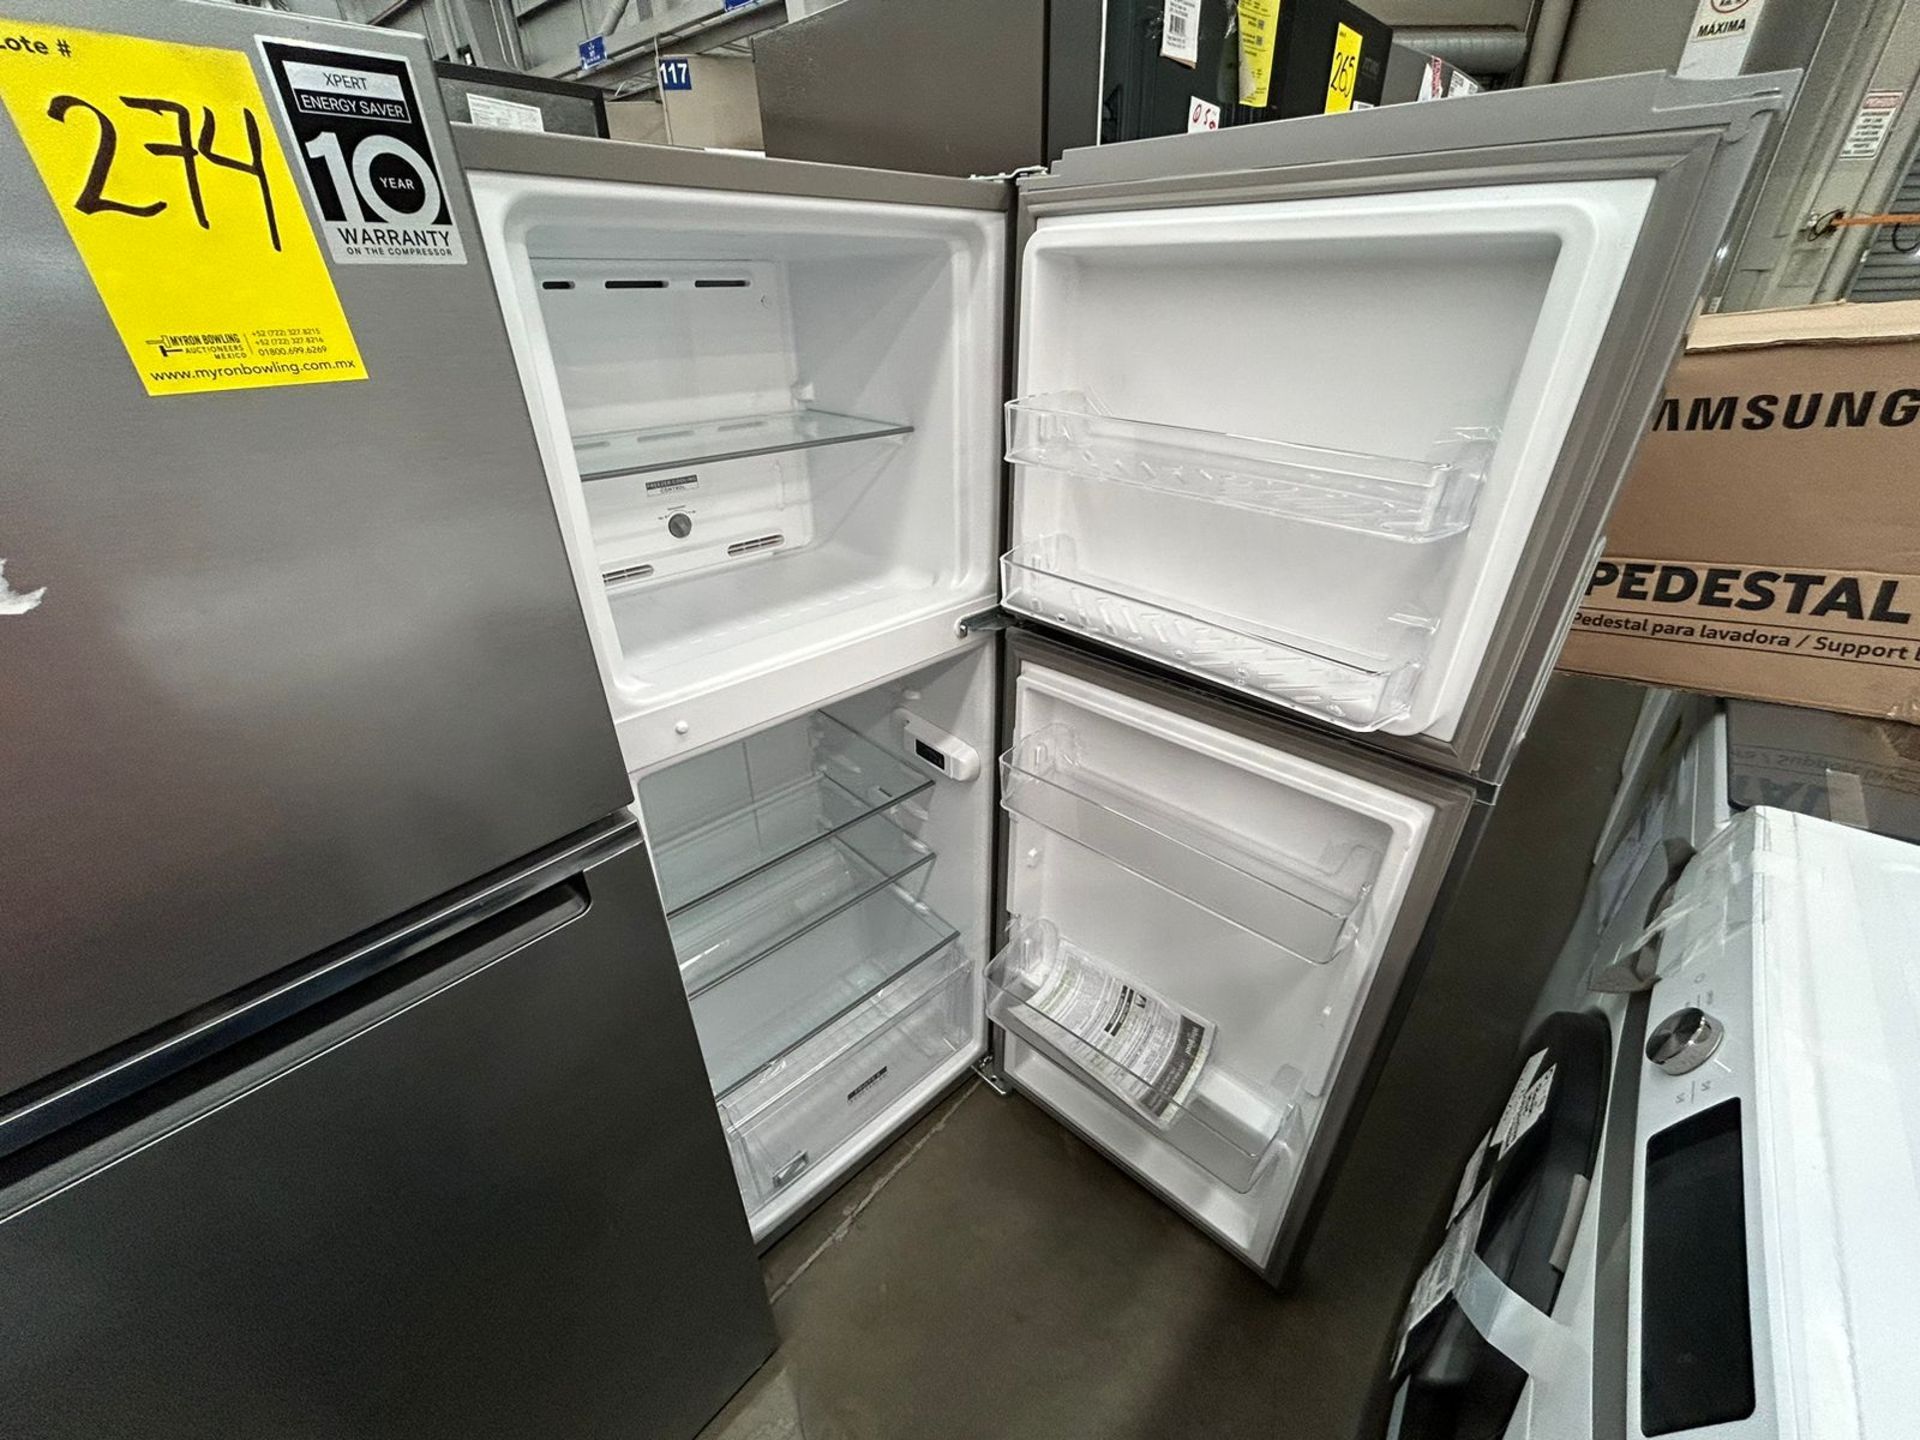 Lote de 2 Refrigeradores, contiene: 1 Refrigerador Marca WHIRLPOOL, Modelo WT1230K04, Serie 842648, - Image 4 of 5